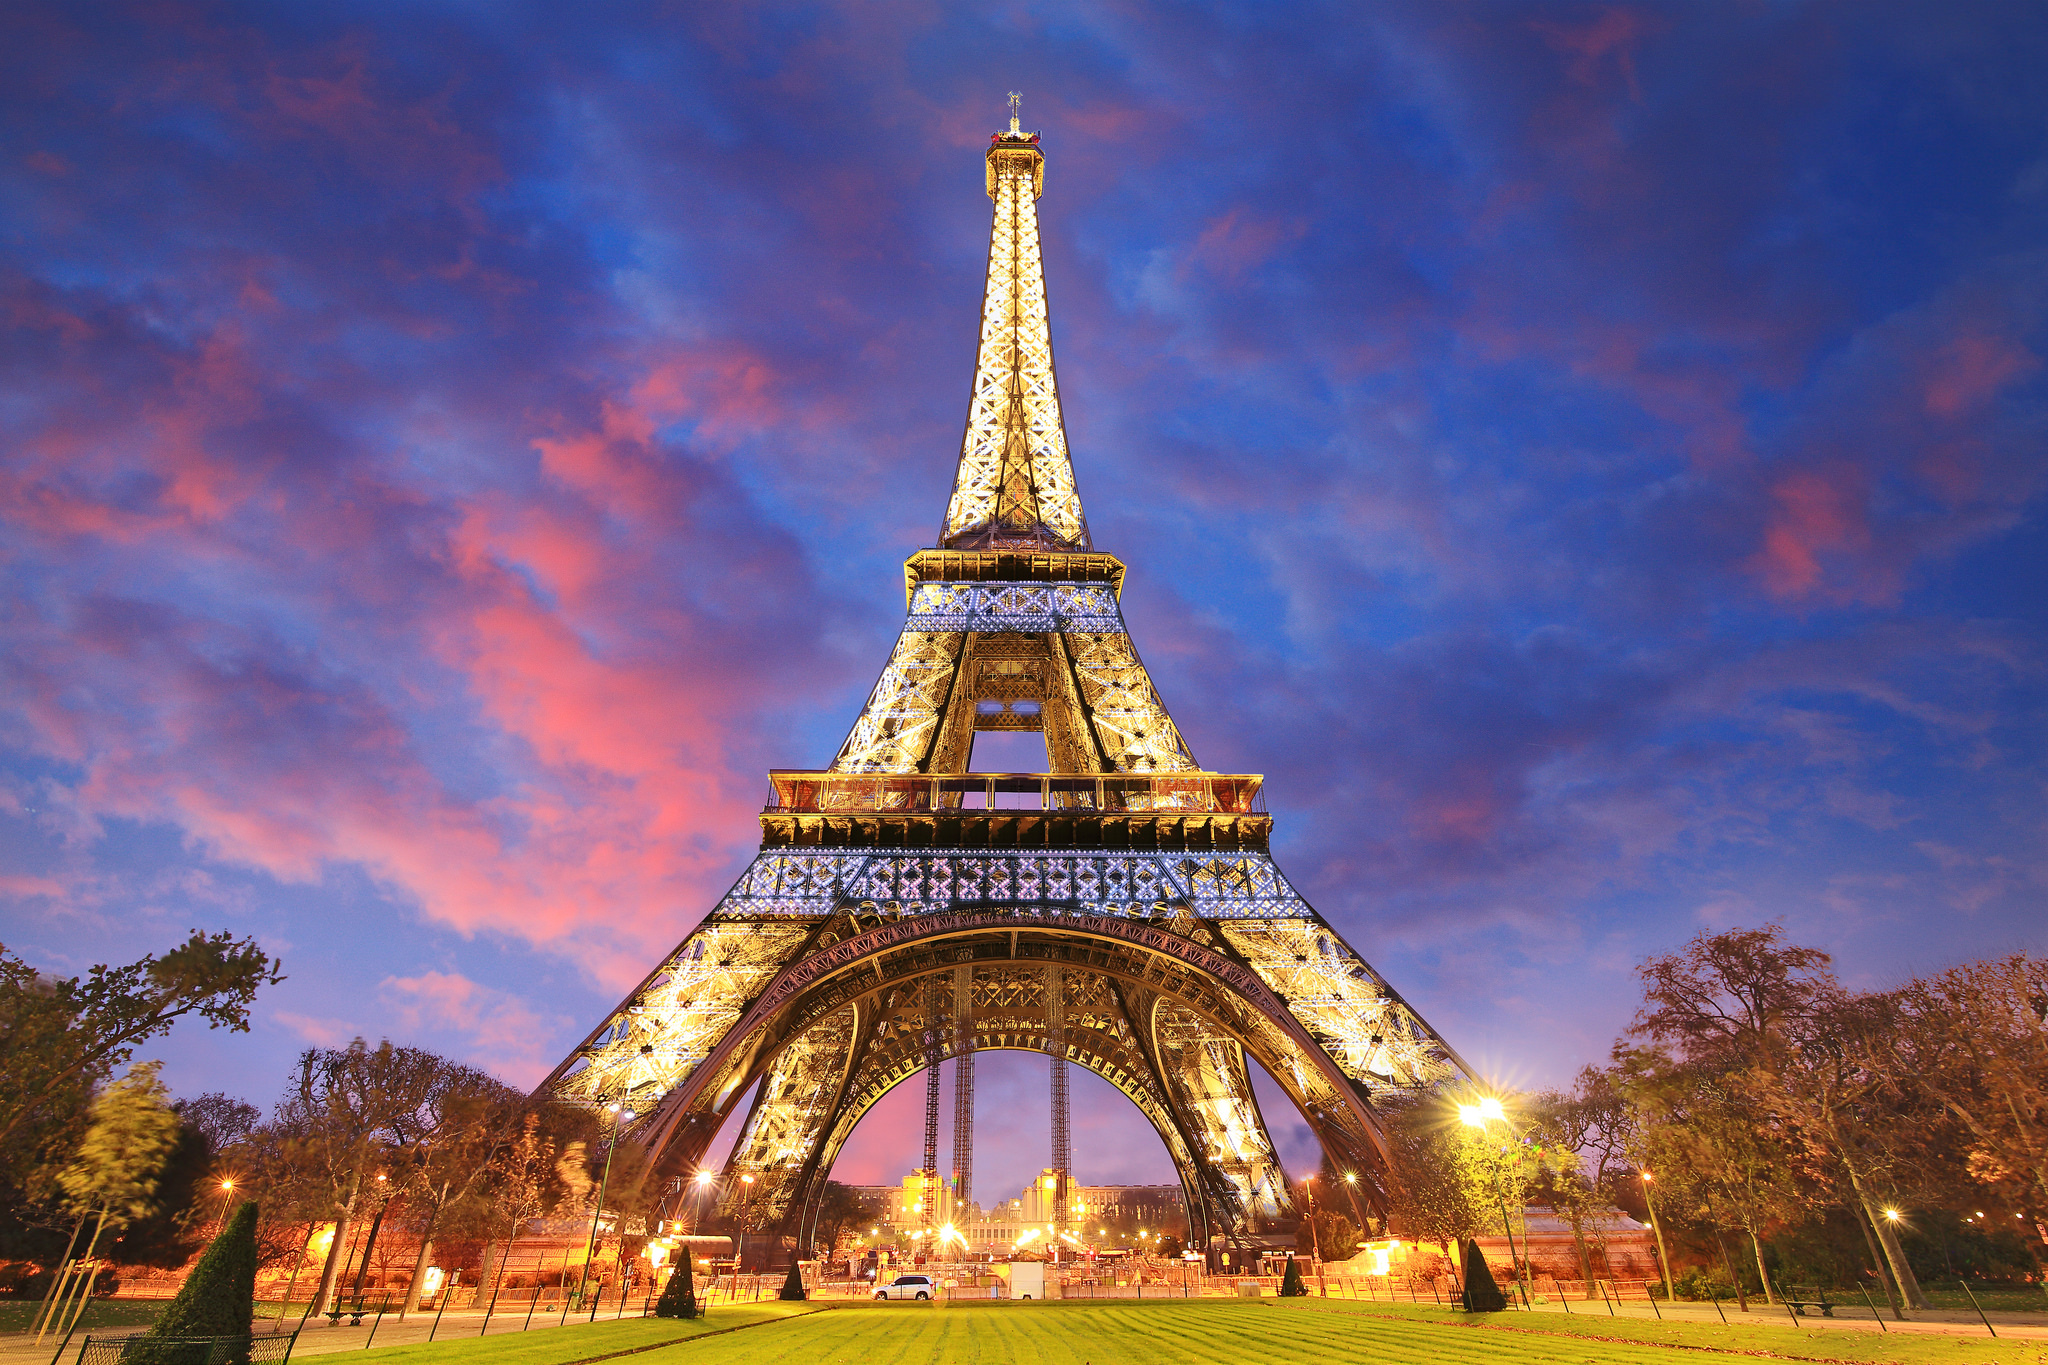 Tổng Hợp 50+ Hình Ảnh Tháp Eiffel Đẹp, Lộng Lấy, Hùng Vĩ Nhất 10